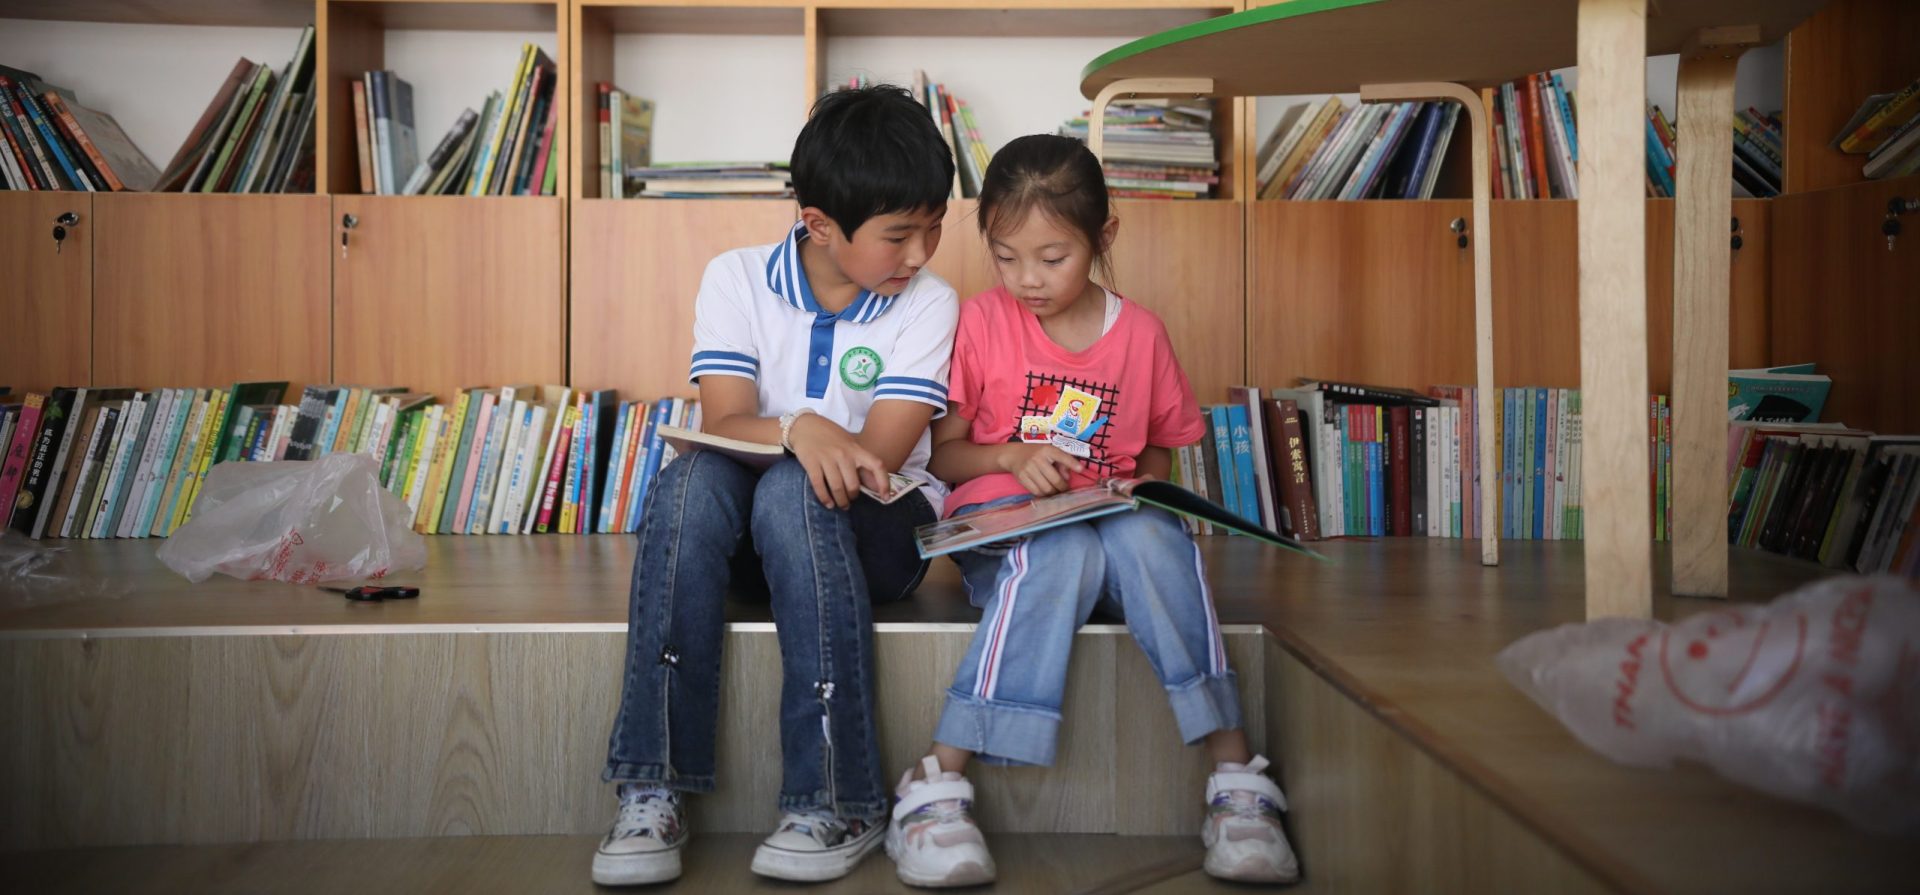 让闲置电子设备成为孩子们学习的窗口 | 彩虹有故事图书馆二手物品募集中